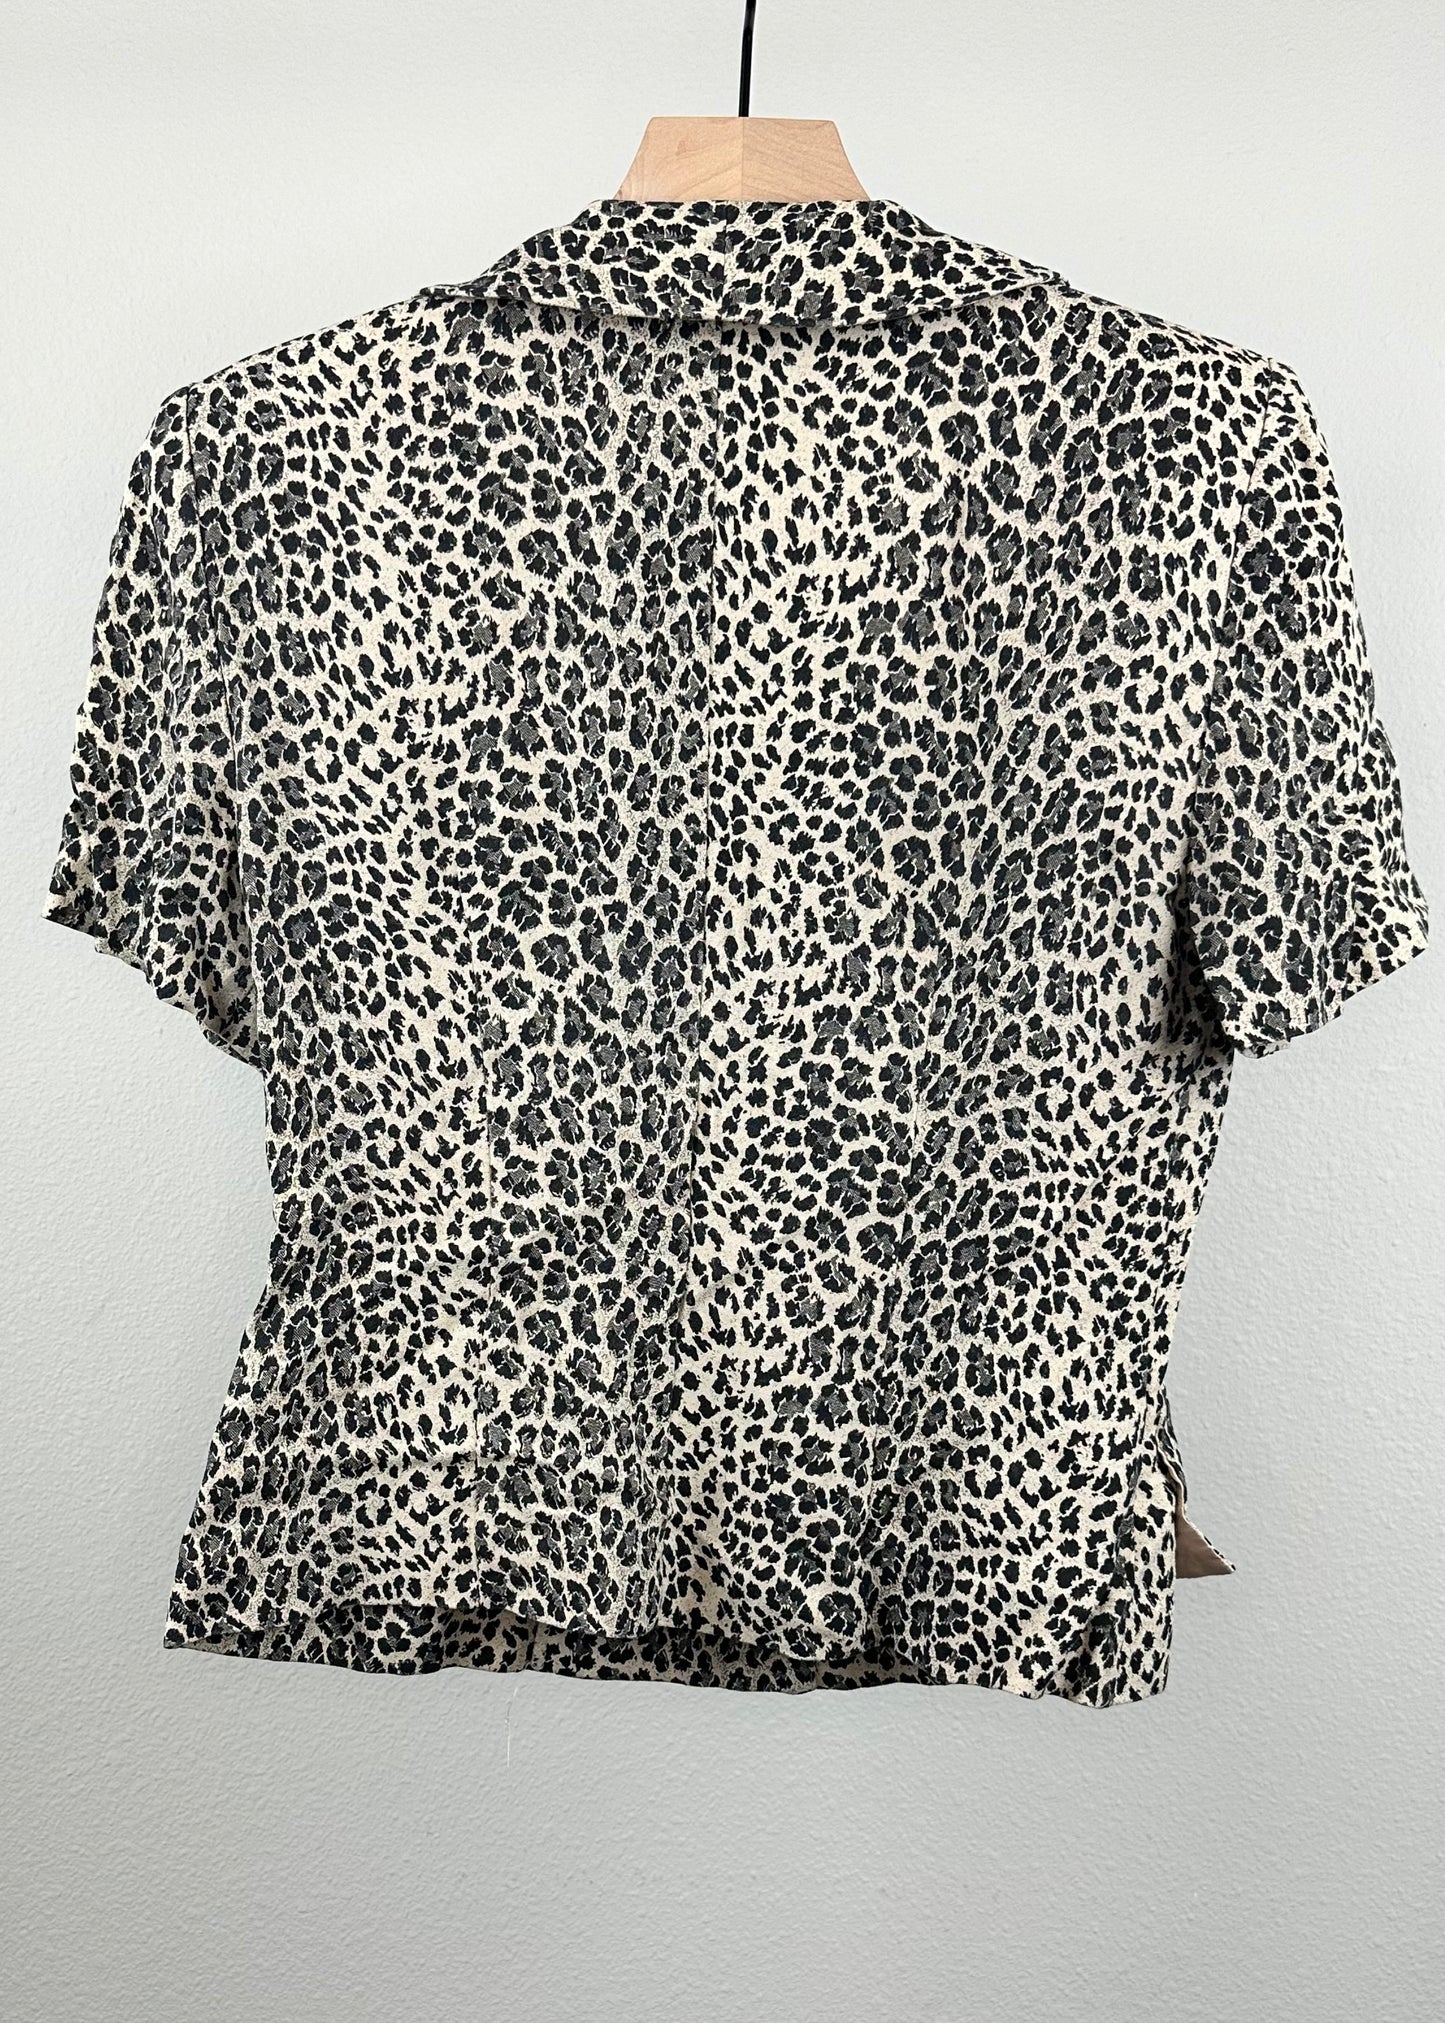 Leopard Blouse By Virgo II